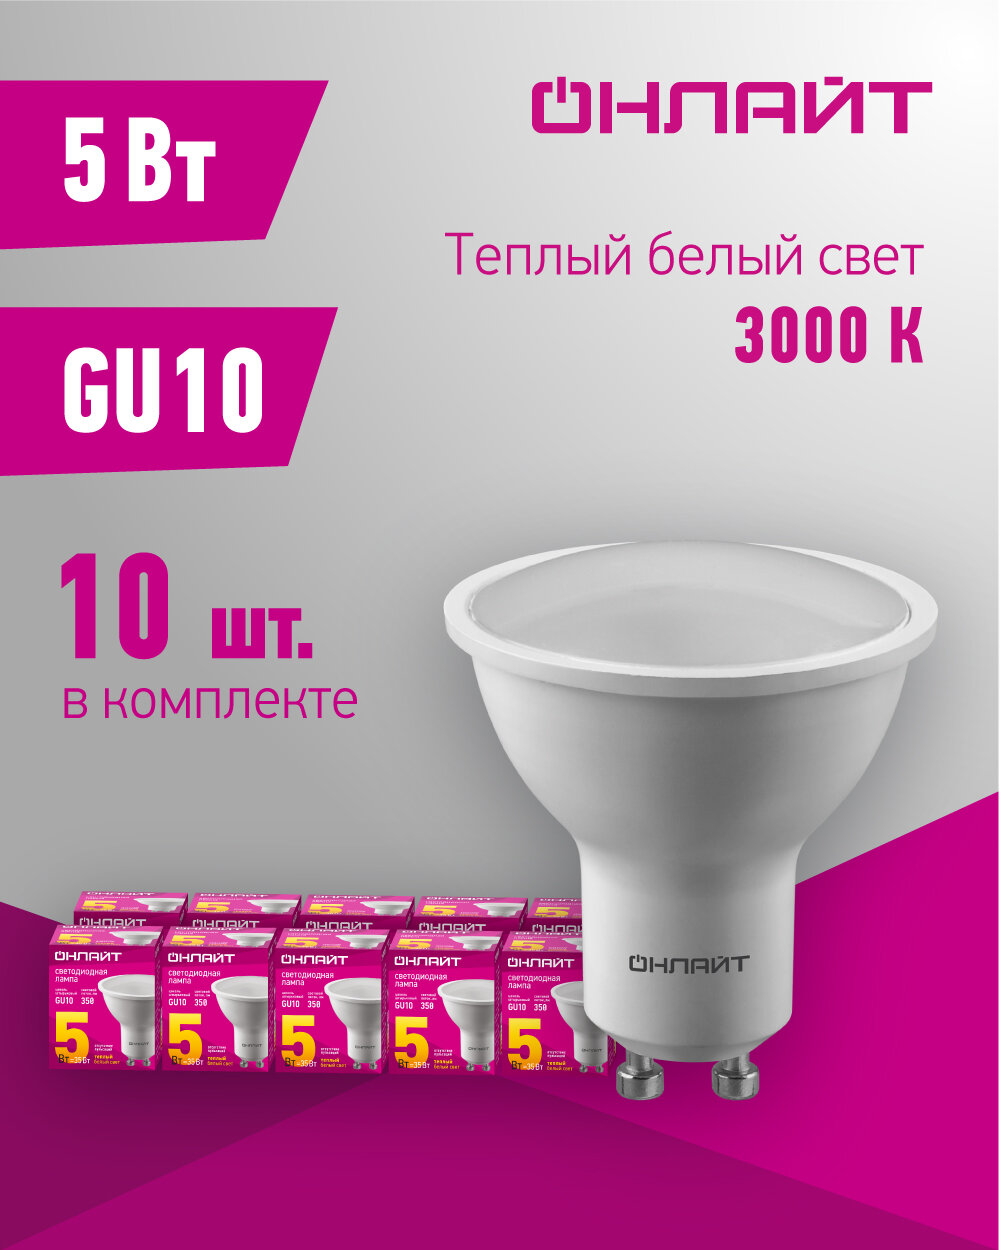 Лампа светодиодная онлайт 61 892, 5 Вт, цоколь GU10, теплый свет 3000К, упаковка 10 шт.